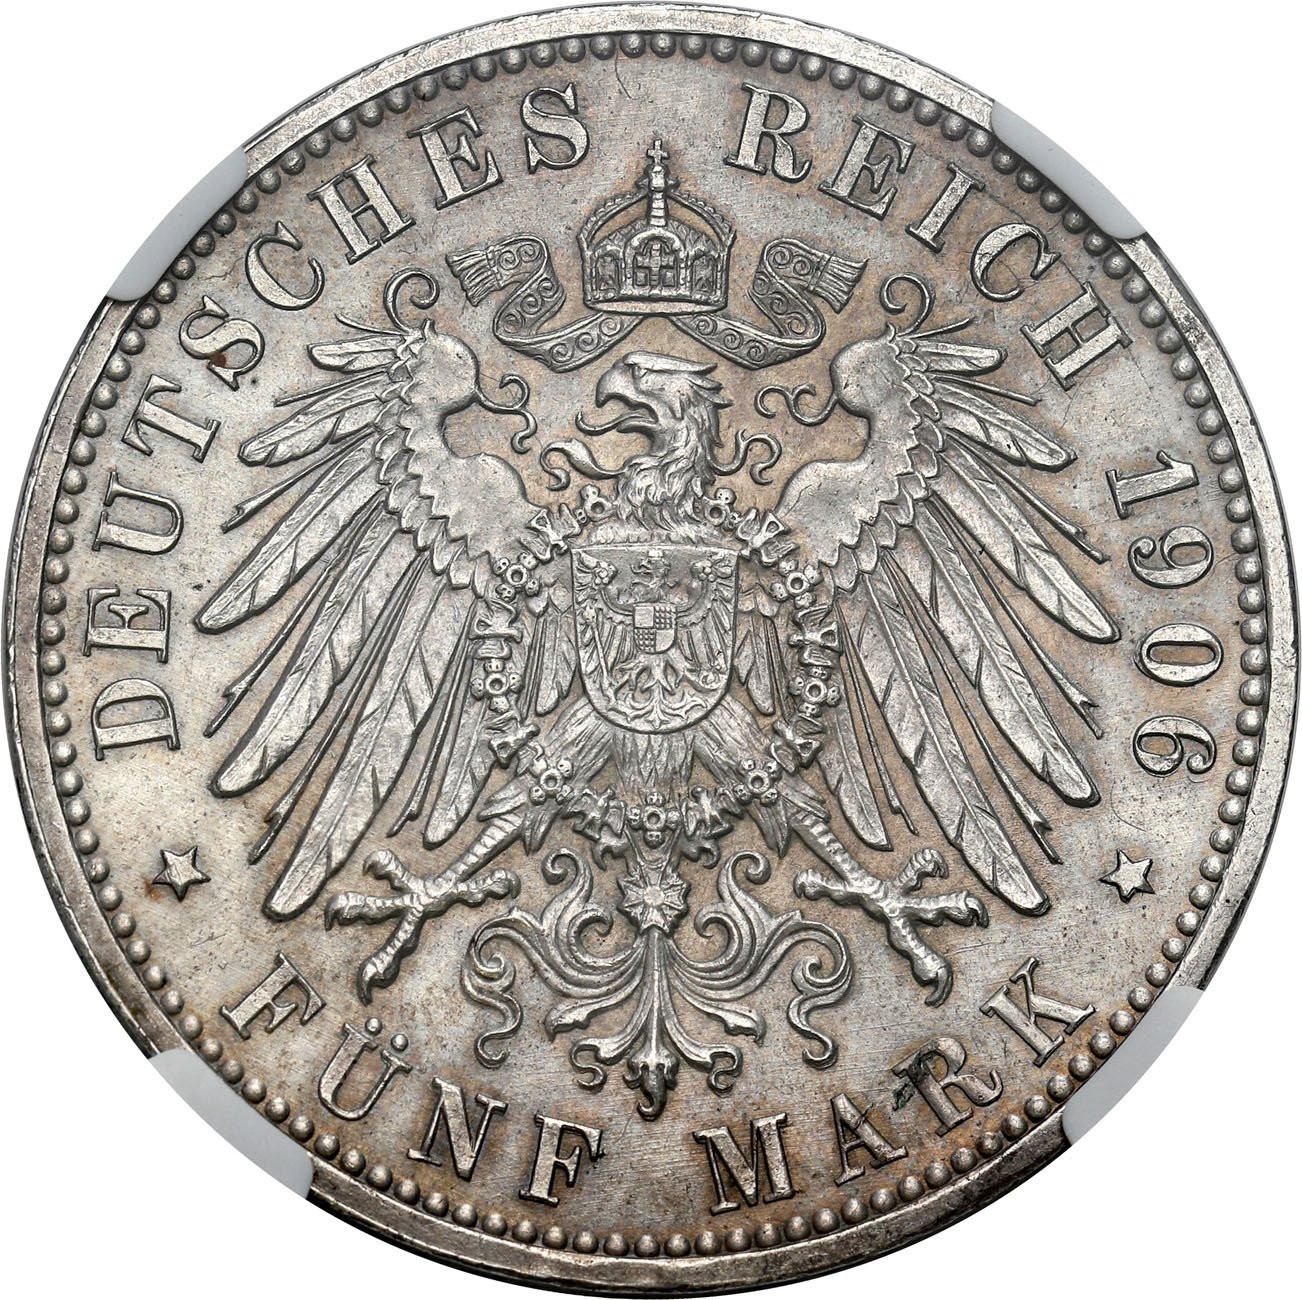 Niemcy, Badenia. 5 marek 1906, Karlsruhe NGC MS62 - PIĘKNE